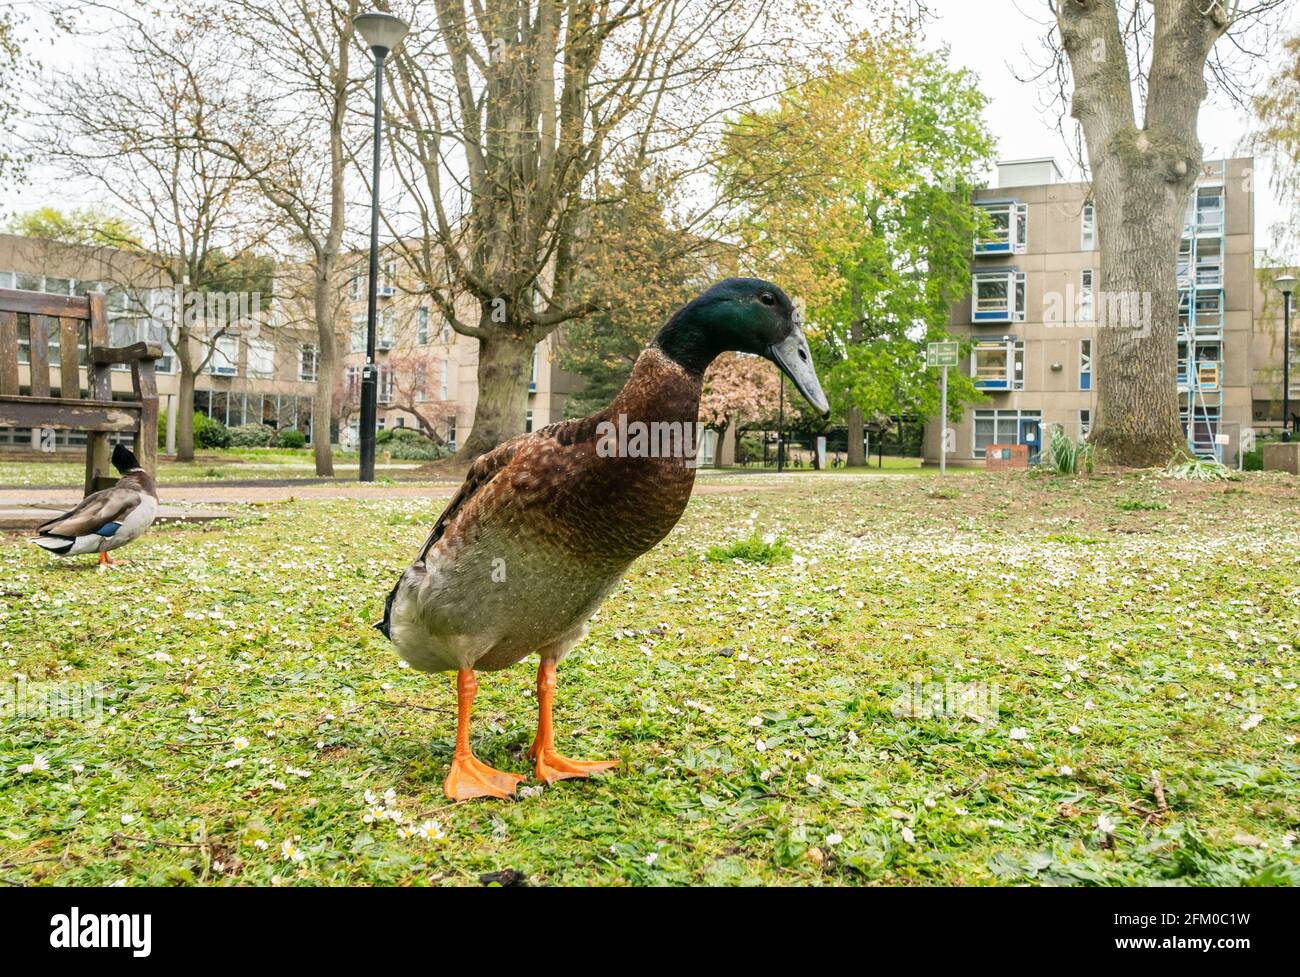 Der Campus der Universität York heißt Long Boi, der aufgrund seiner beeindruckenden Statur viral wurde. Es wird angenommen, dass die sehr große Ente eine Kreuzung zwischen einer Mallard- und einer Indian Runner-Ente ist. Bilddatum: Montag, 3. Mai 2021. Stockfoto